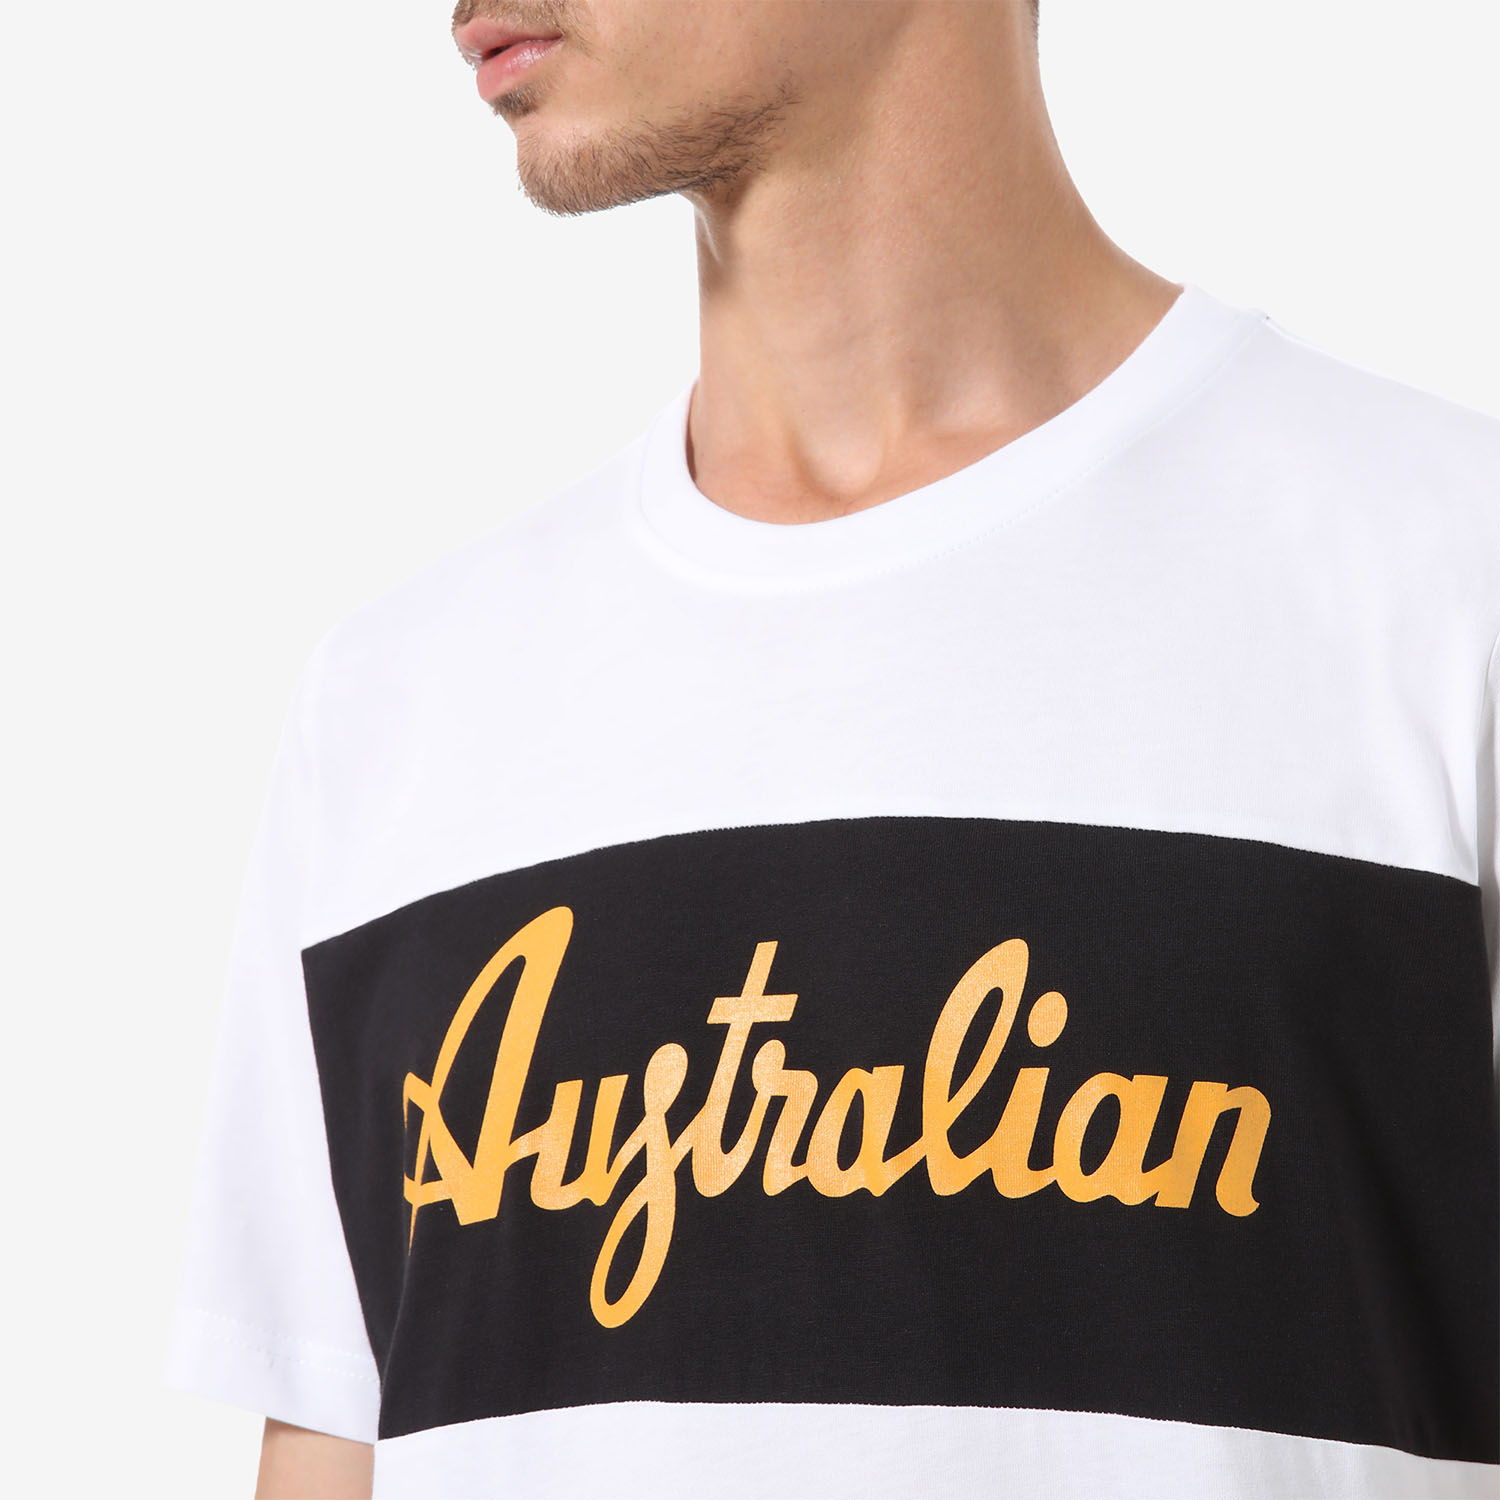 Australian Print Camiseta - Bianco/Girasole